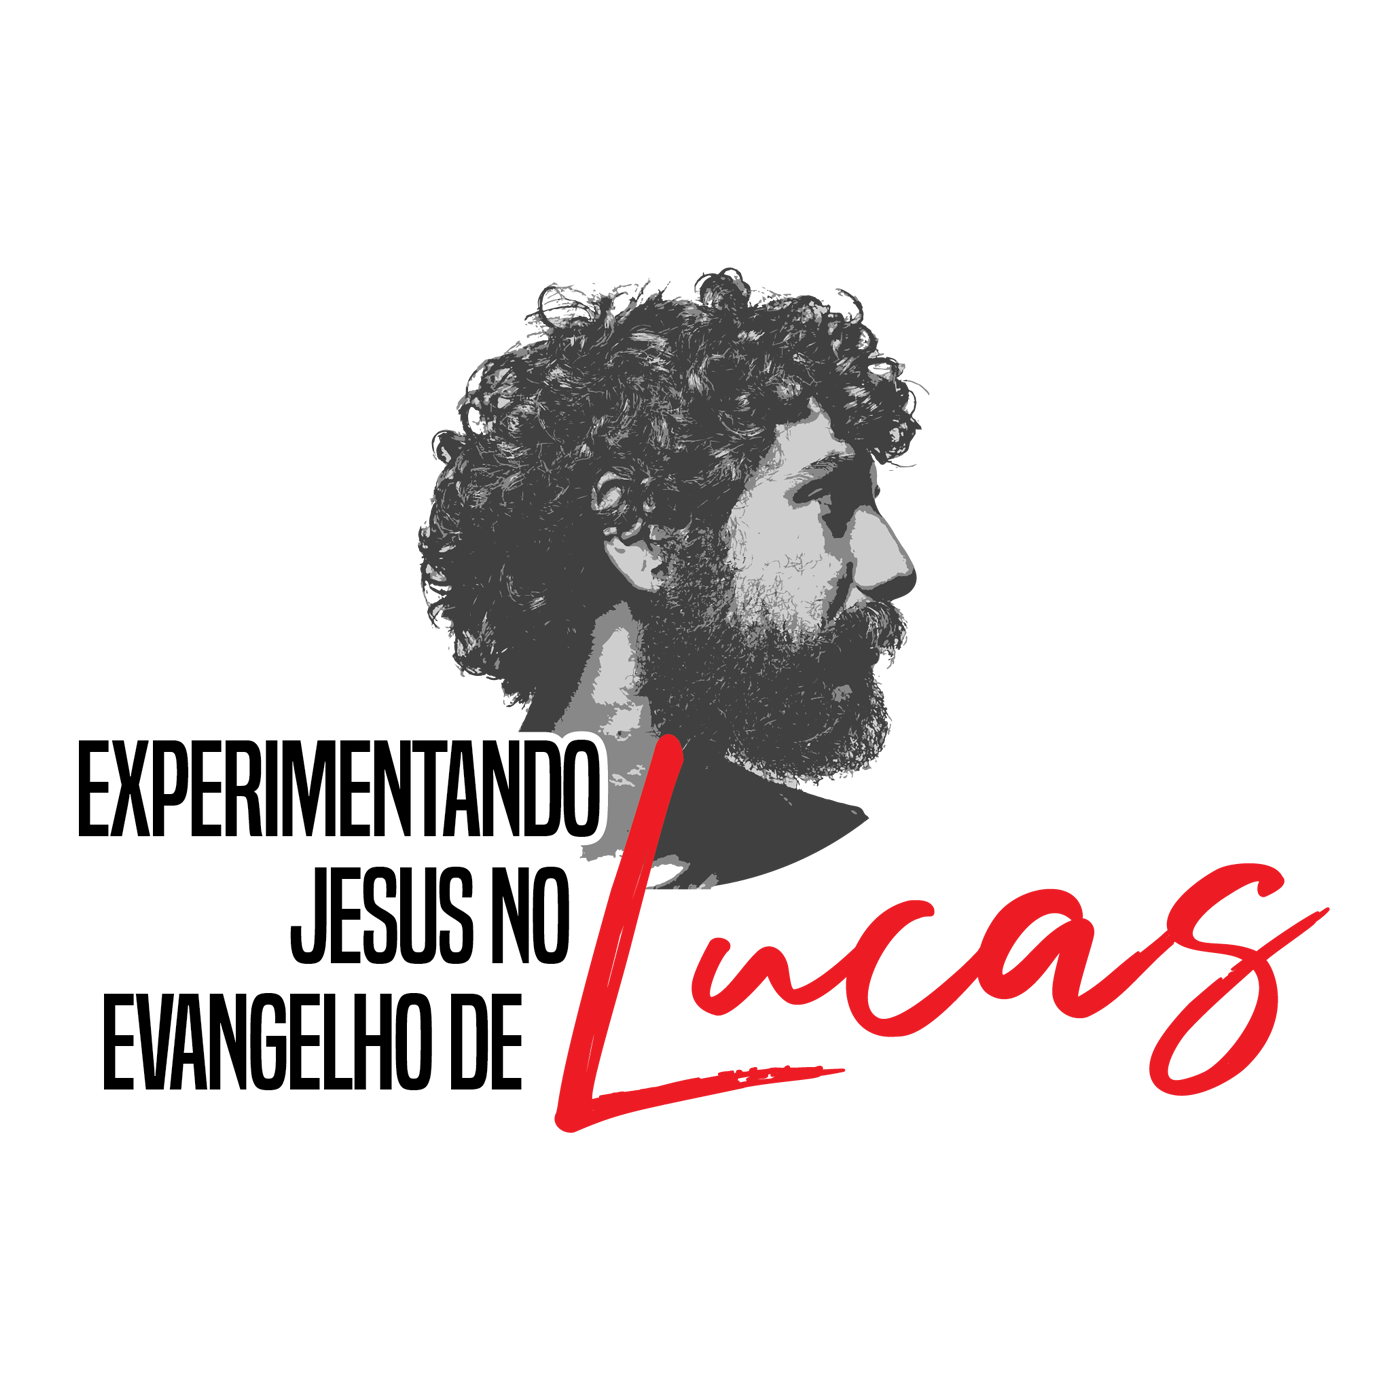 Lucas 6:24-26